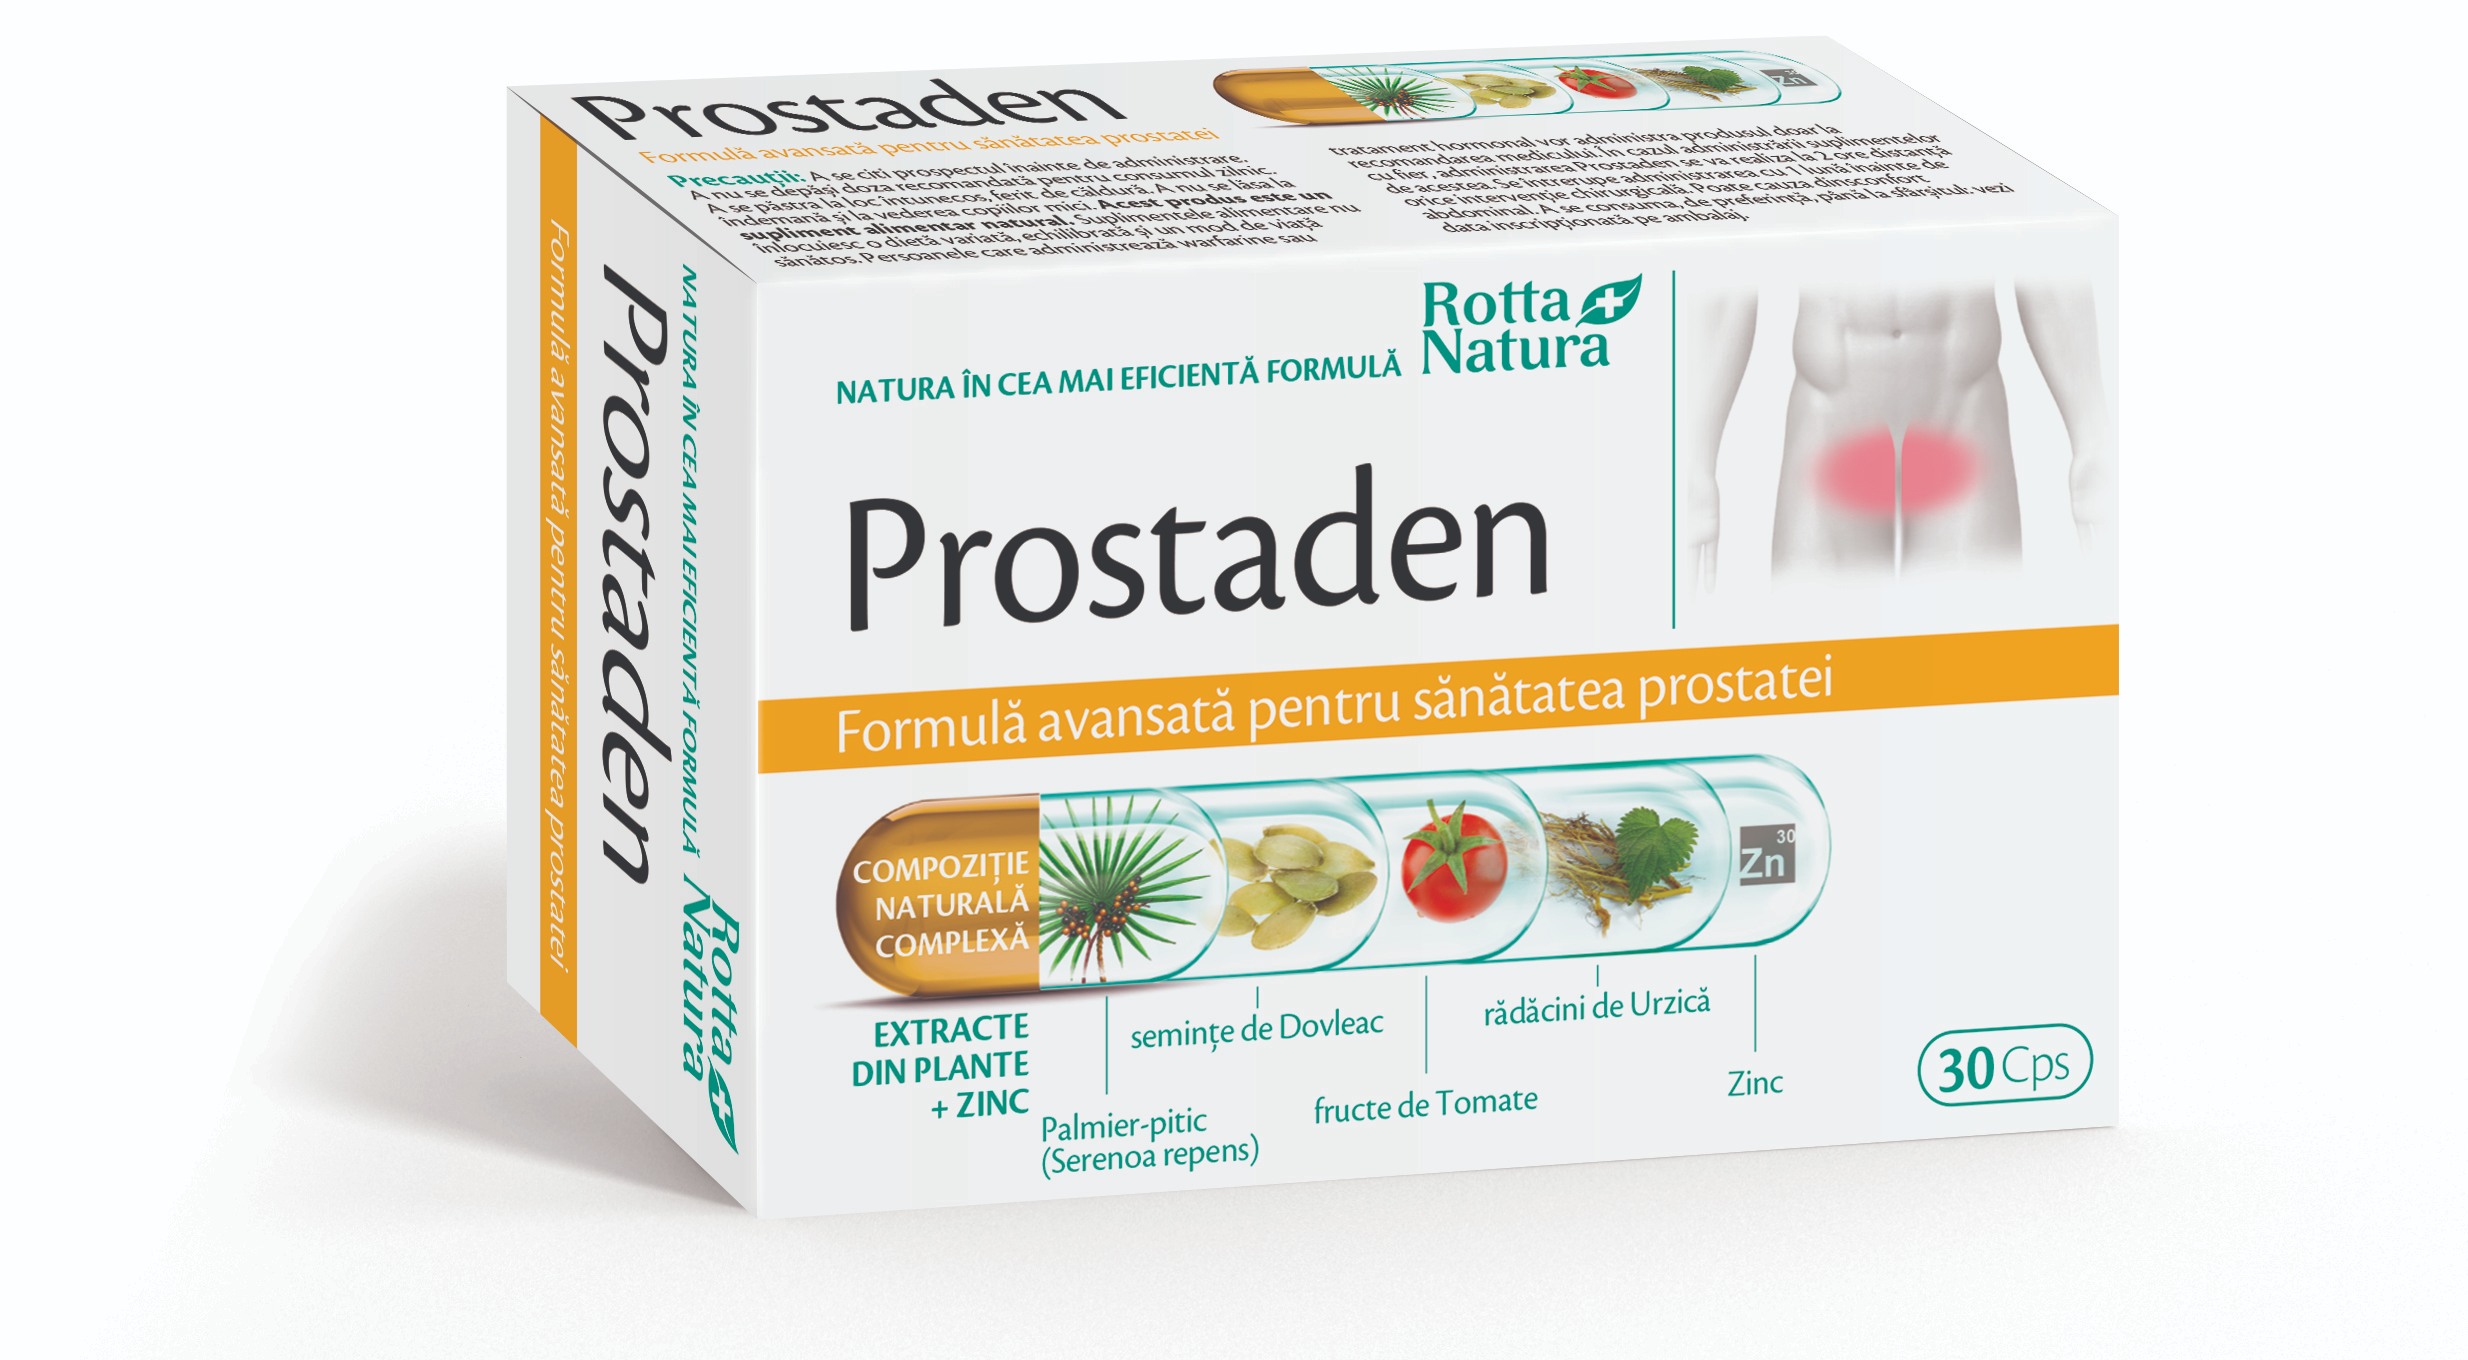 psa 10 prostata adenome prostatique traitement naturel